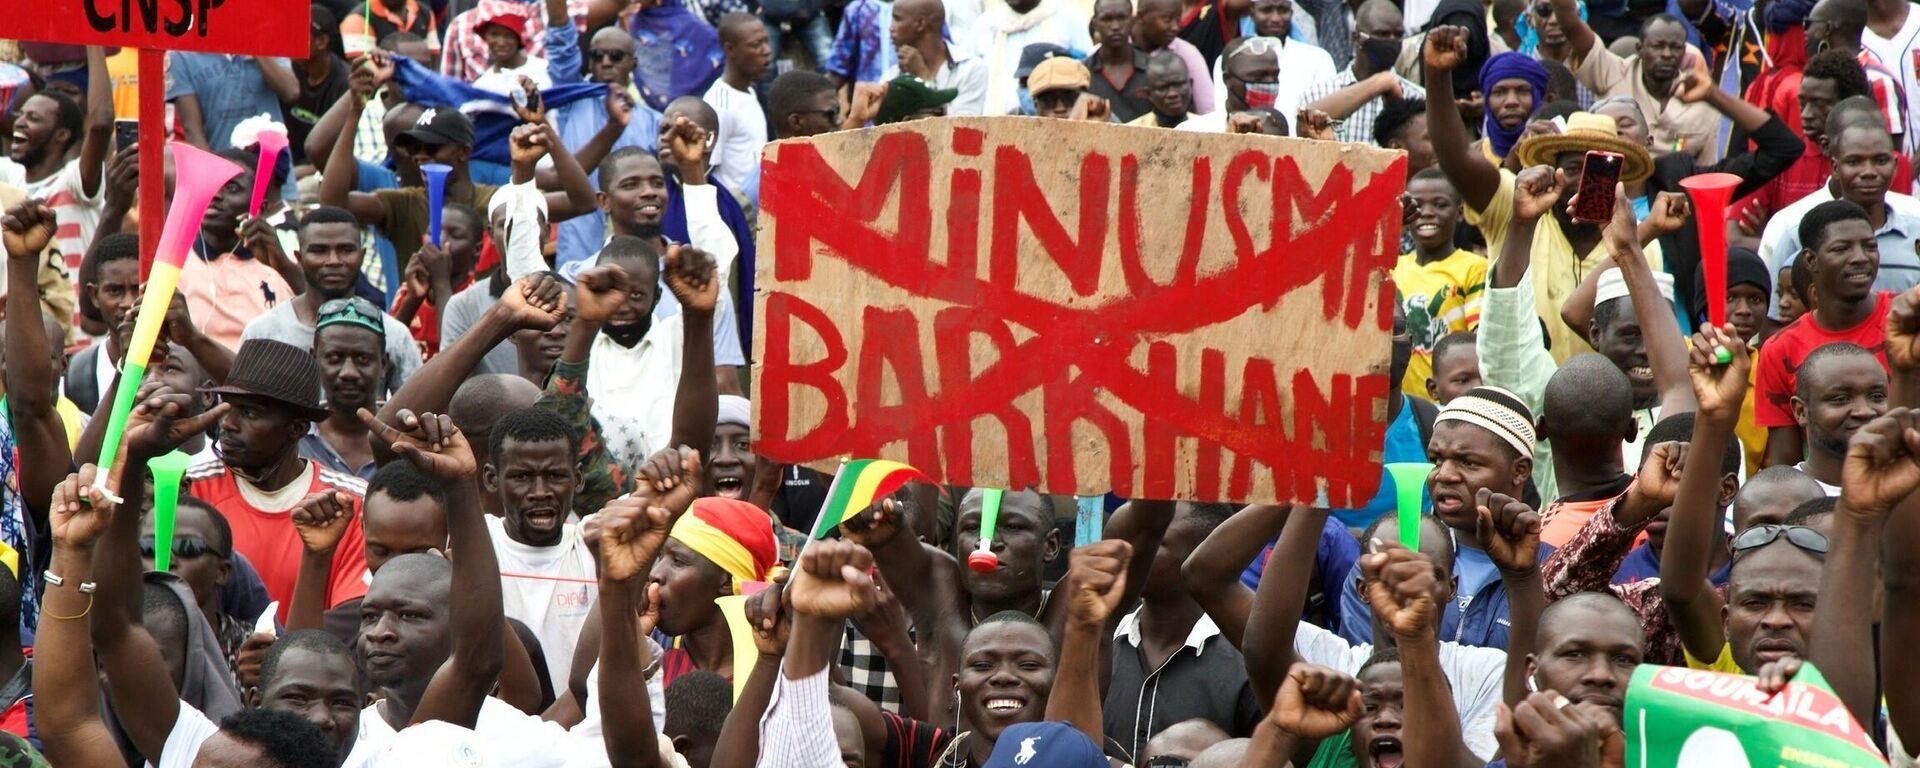 Manifestación en Bamako en apoyo del Ejército de Mali - Sputnik Mundo, 1920, 24.05.2021